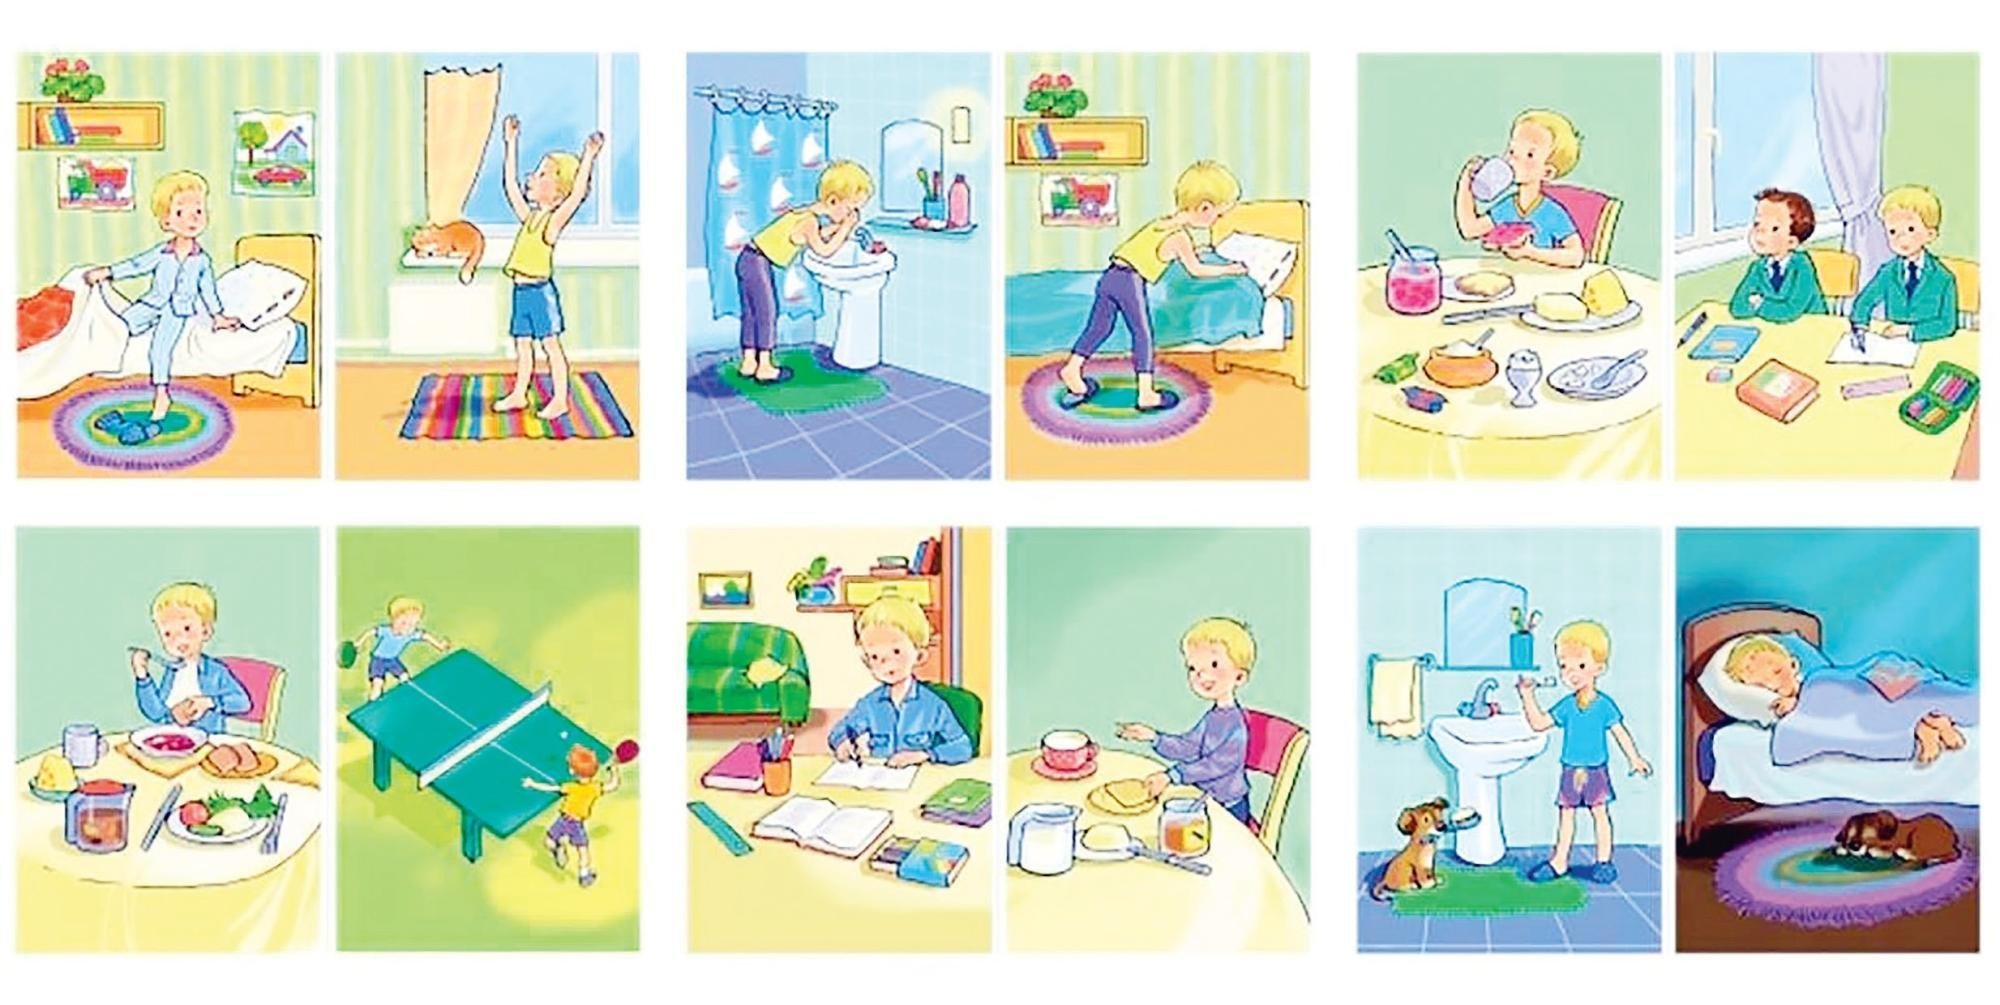 Карточки режим дня для детей